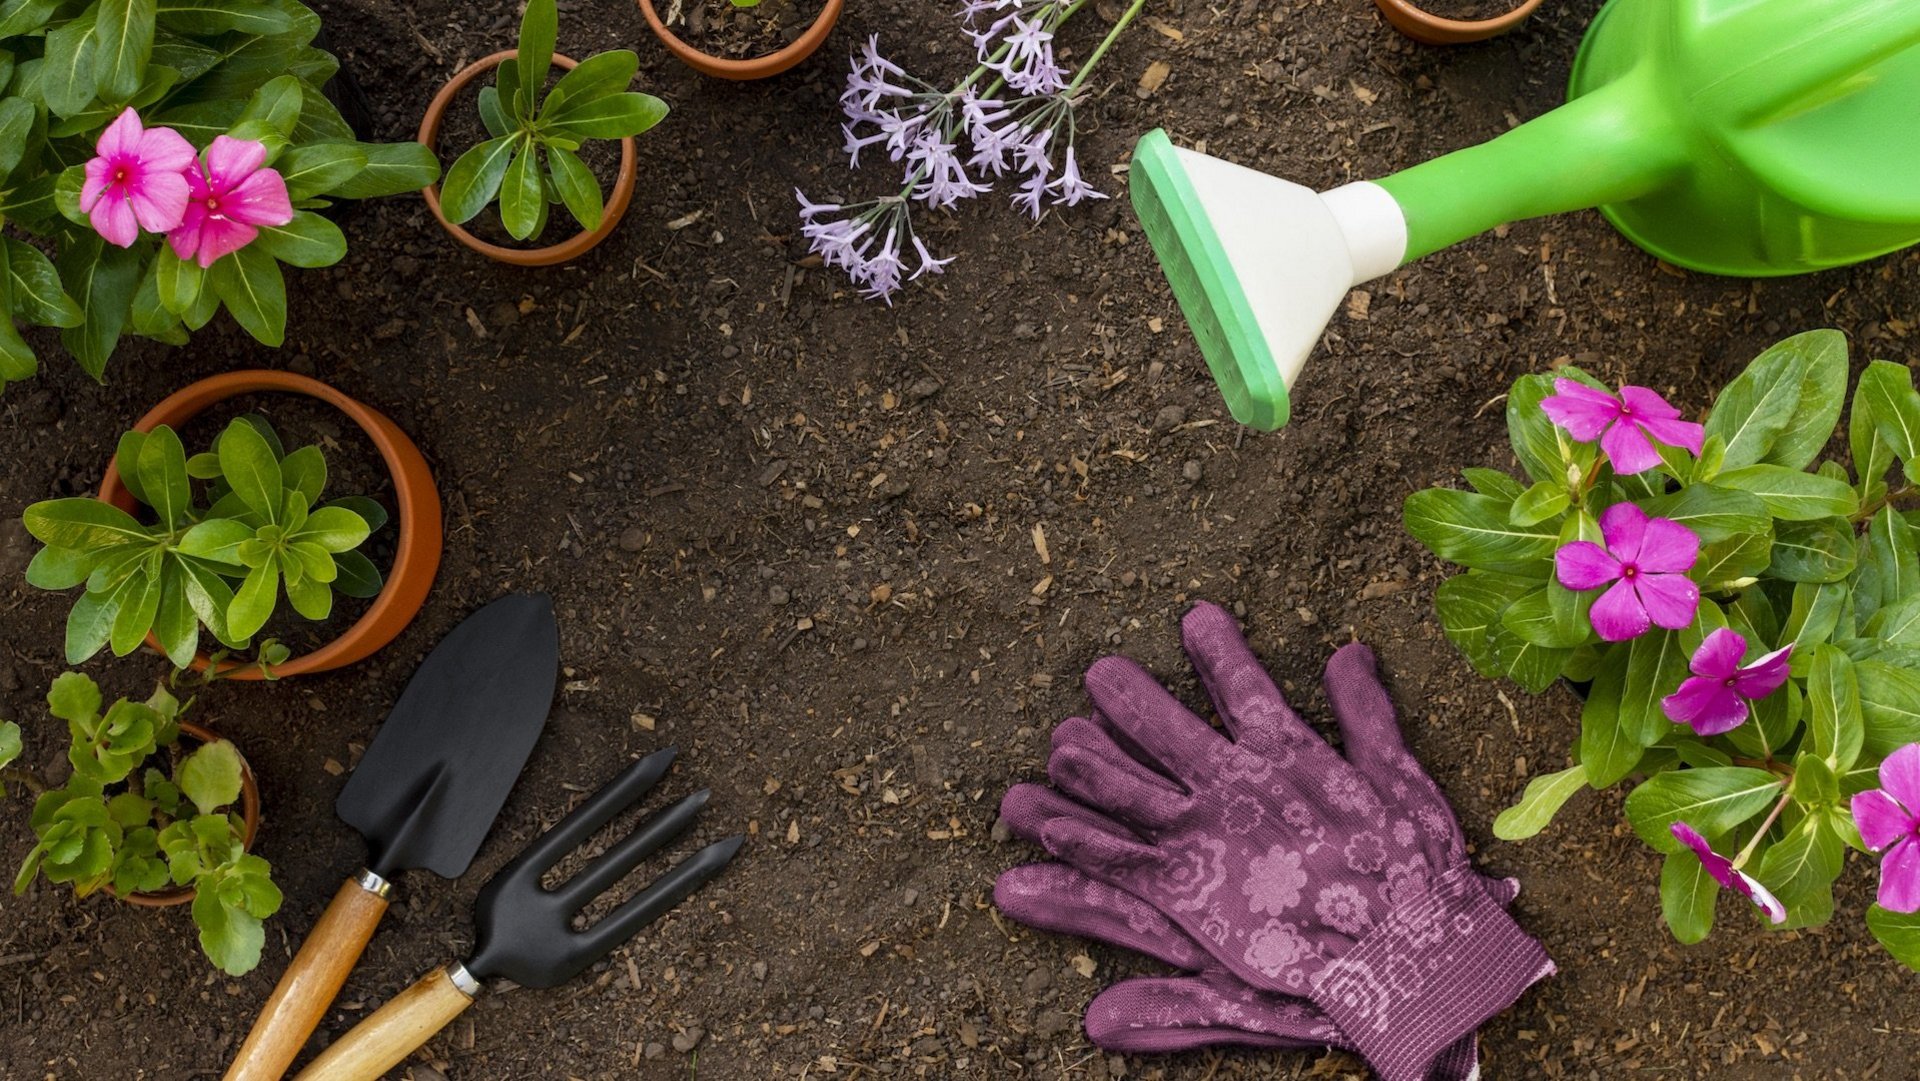 Das Foto Zeigt, kleine Pflanzen eine grüne Gießkanne, lila Gartenhandschuhe und Gartenequipment auf einen Boden. 